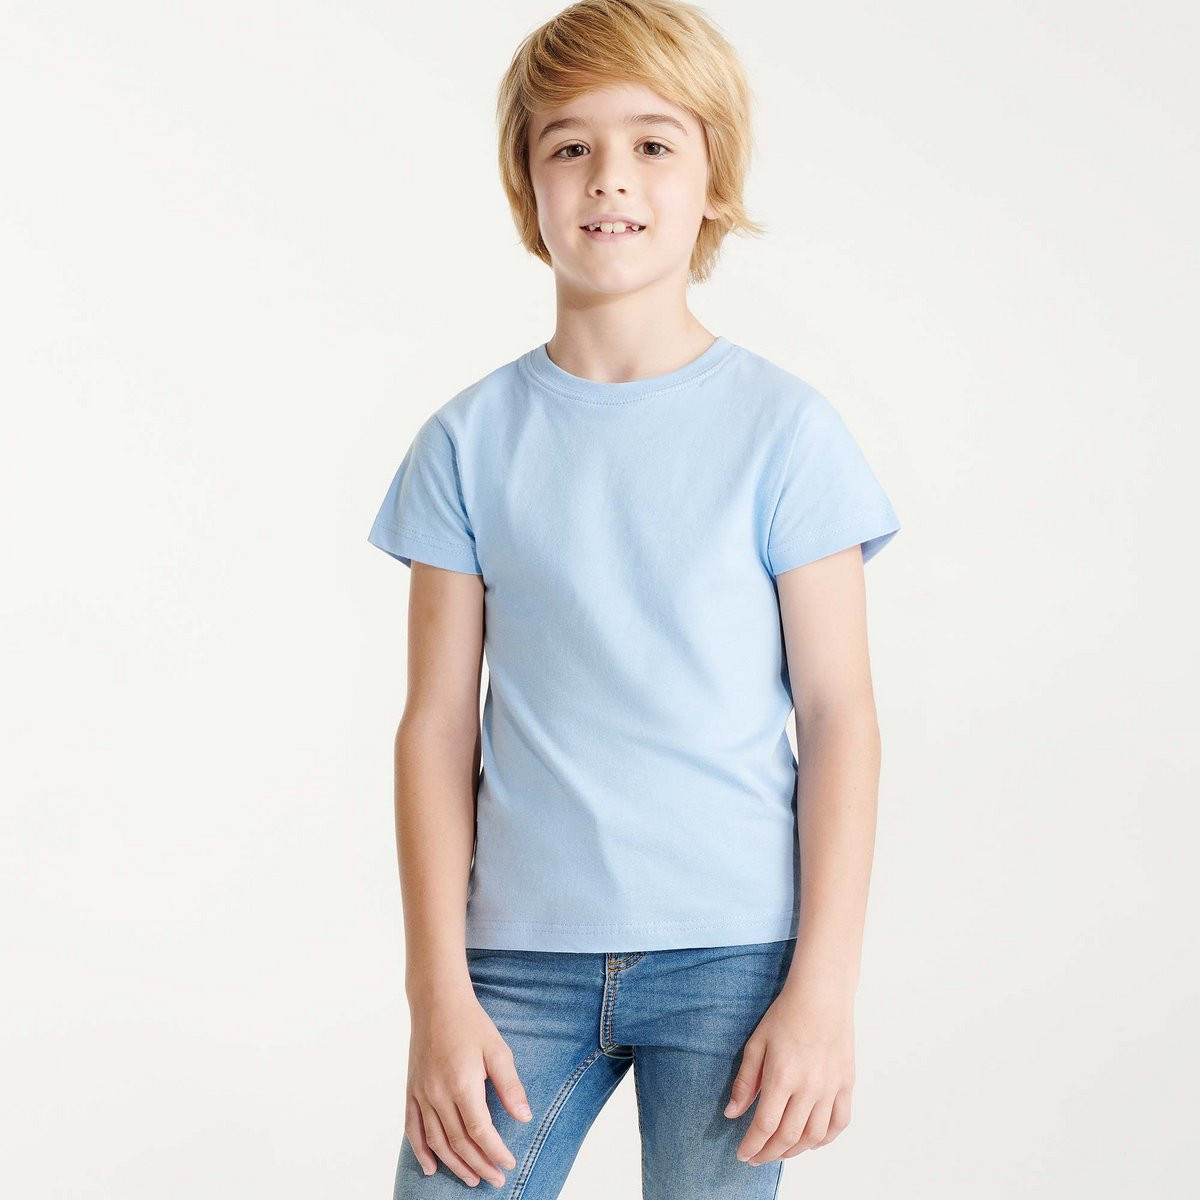 vesícula biliar Apariencia acortar Camiseta manga corta para niño ROLY 6554 Beagle, compra online